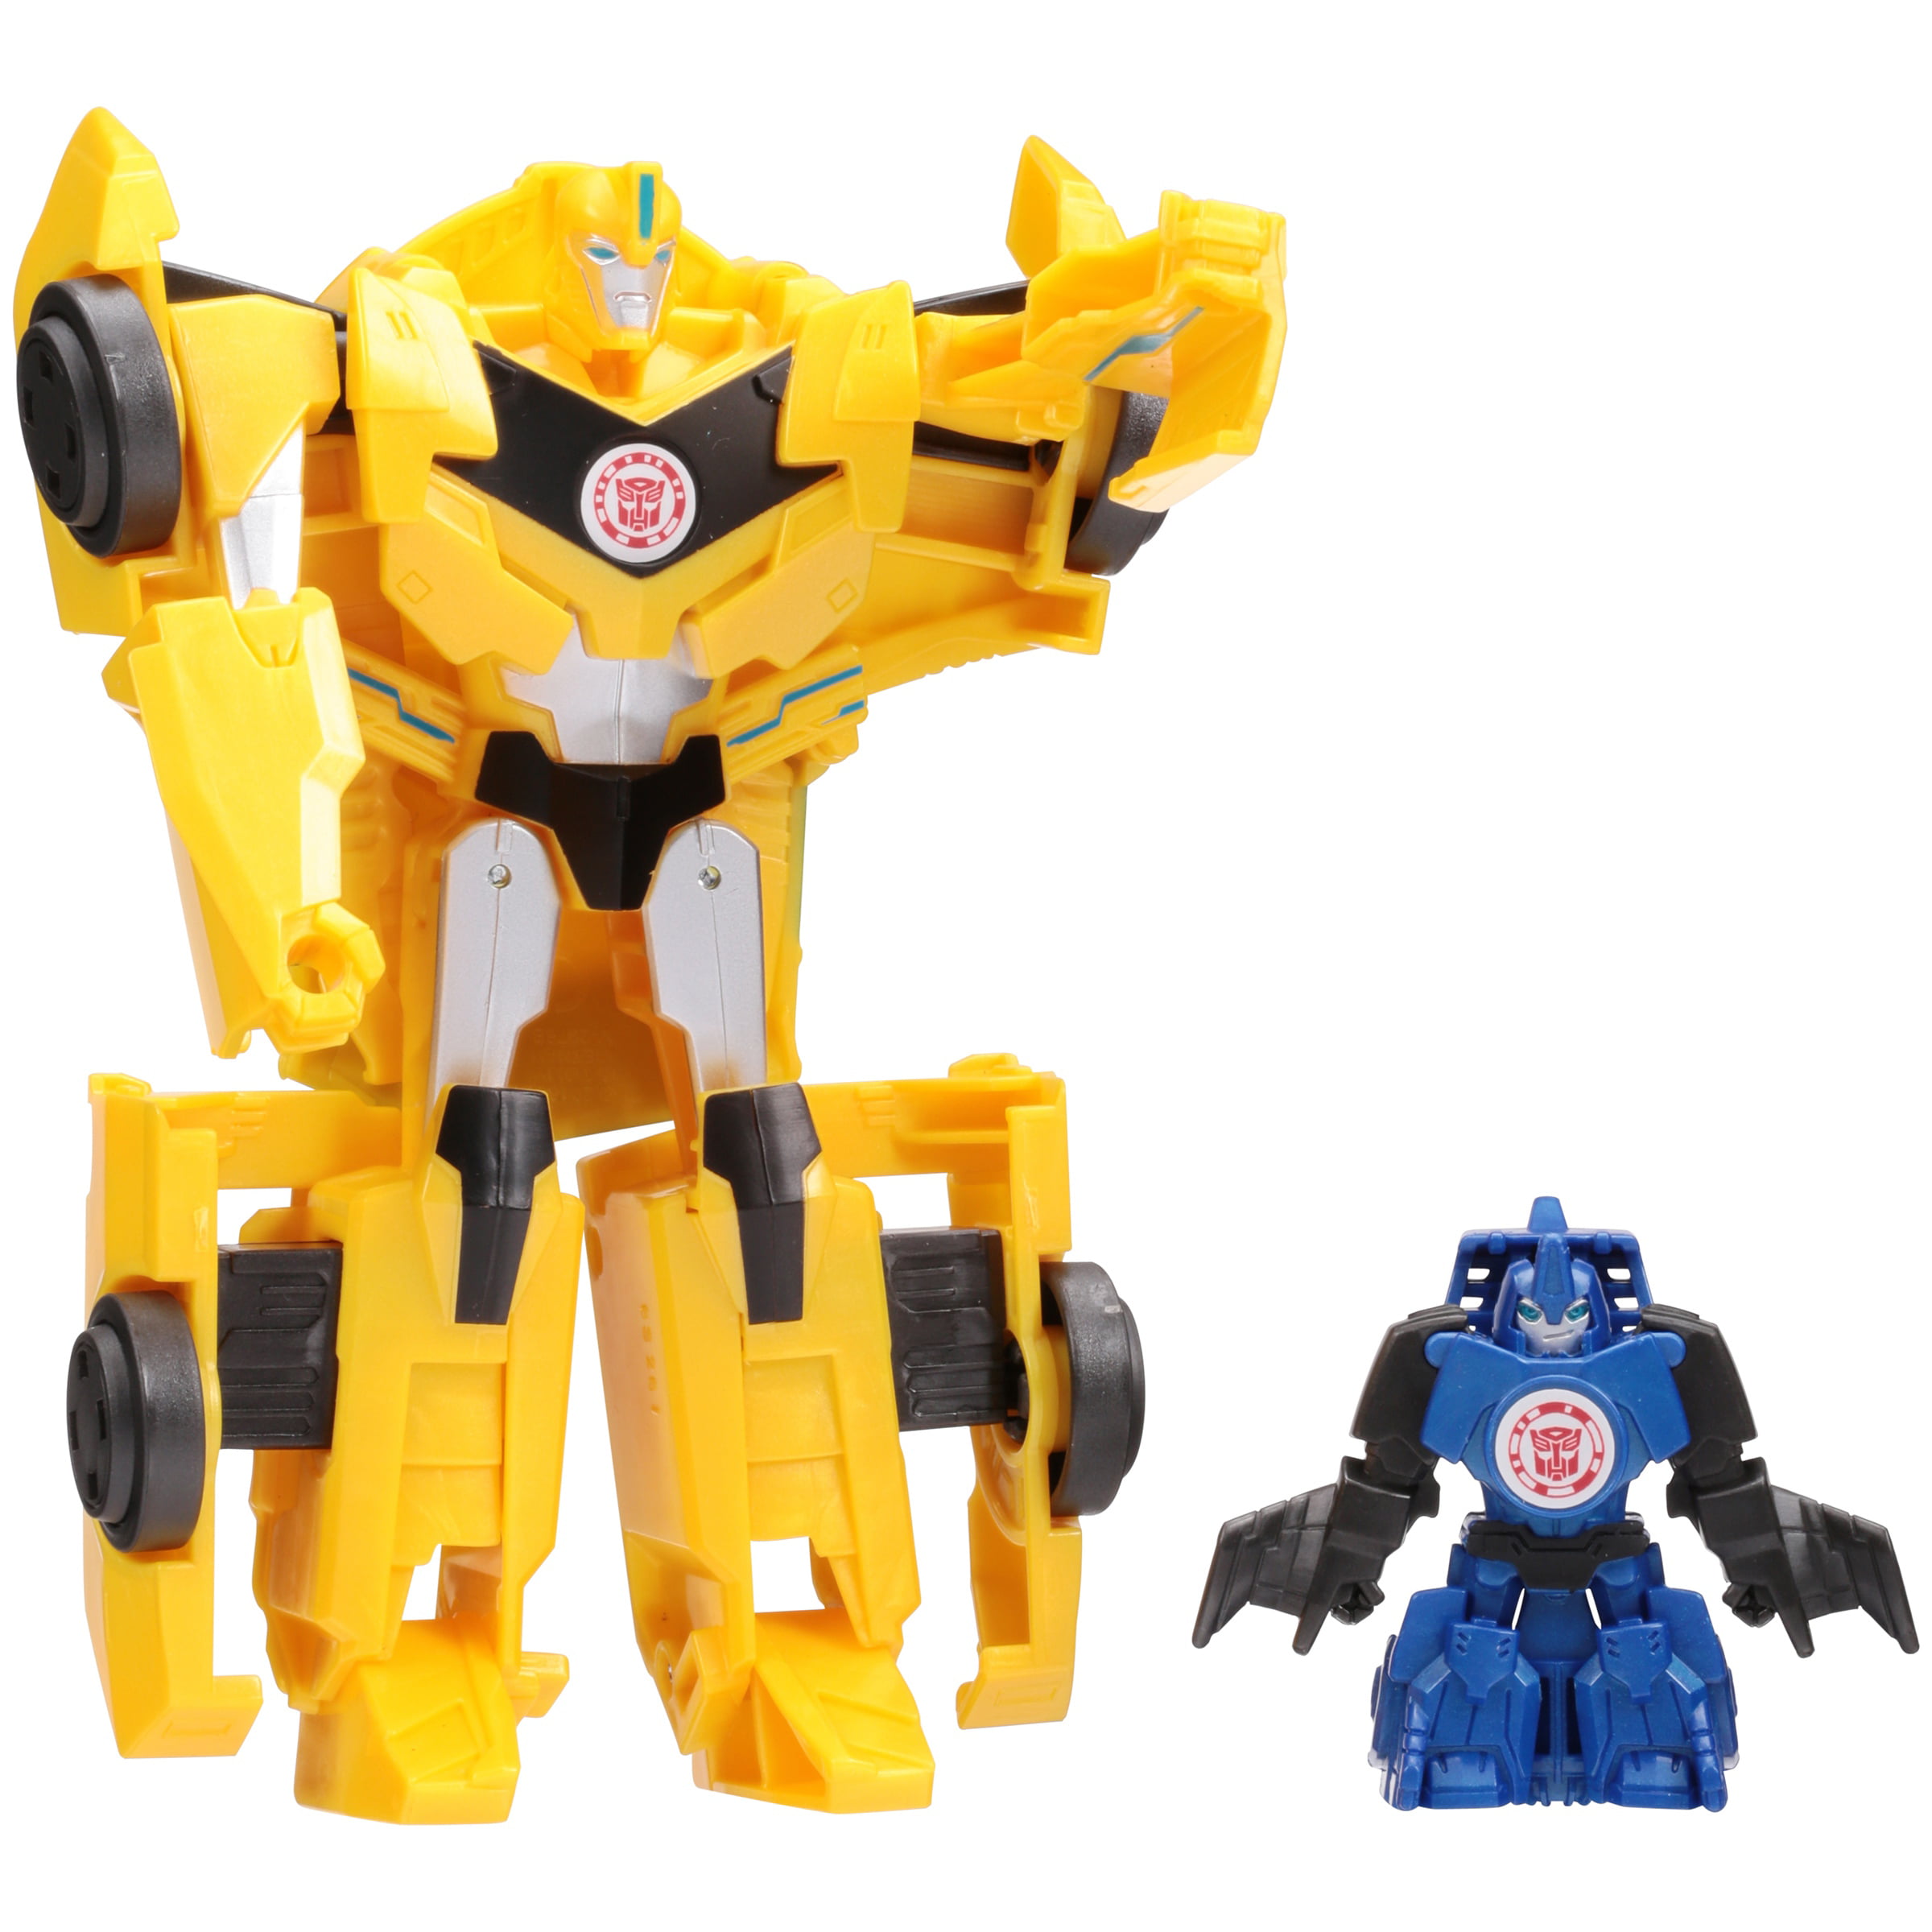 transformers bumblebee combiner force